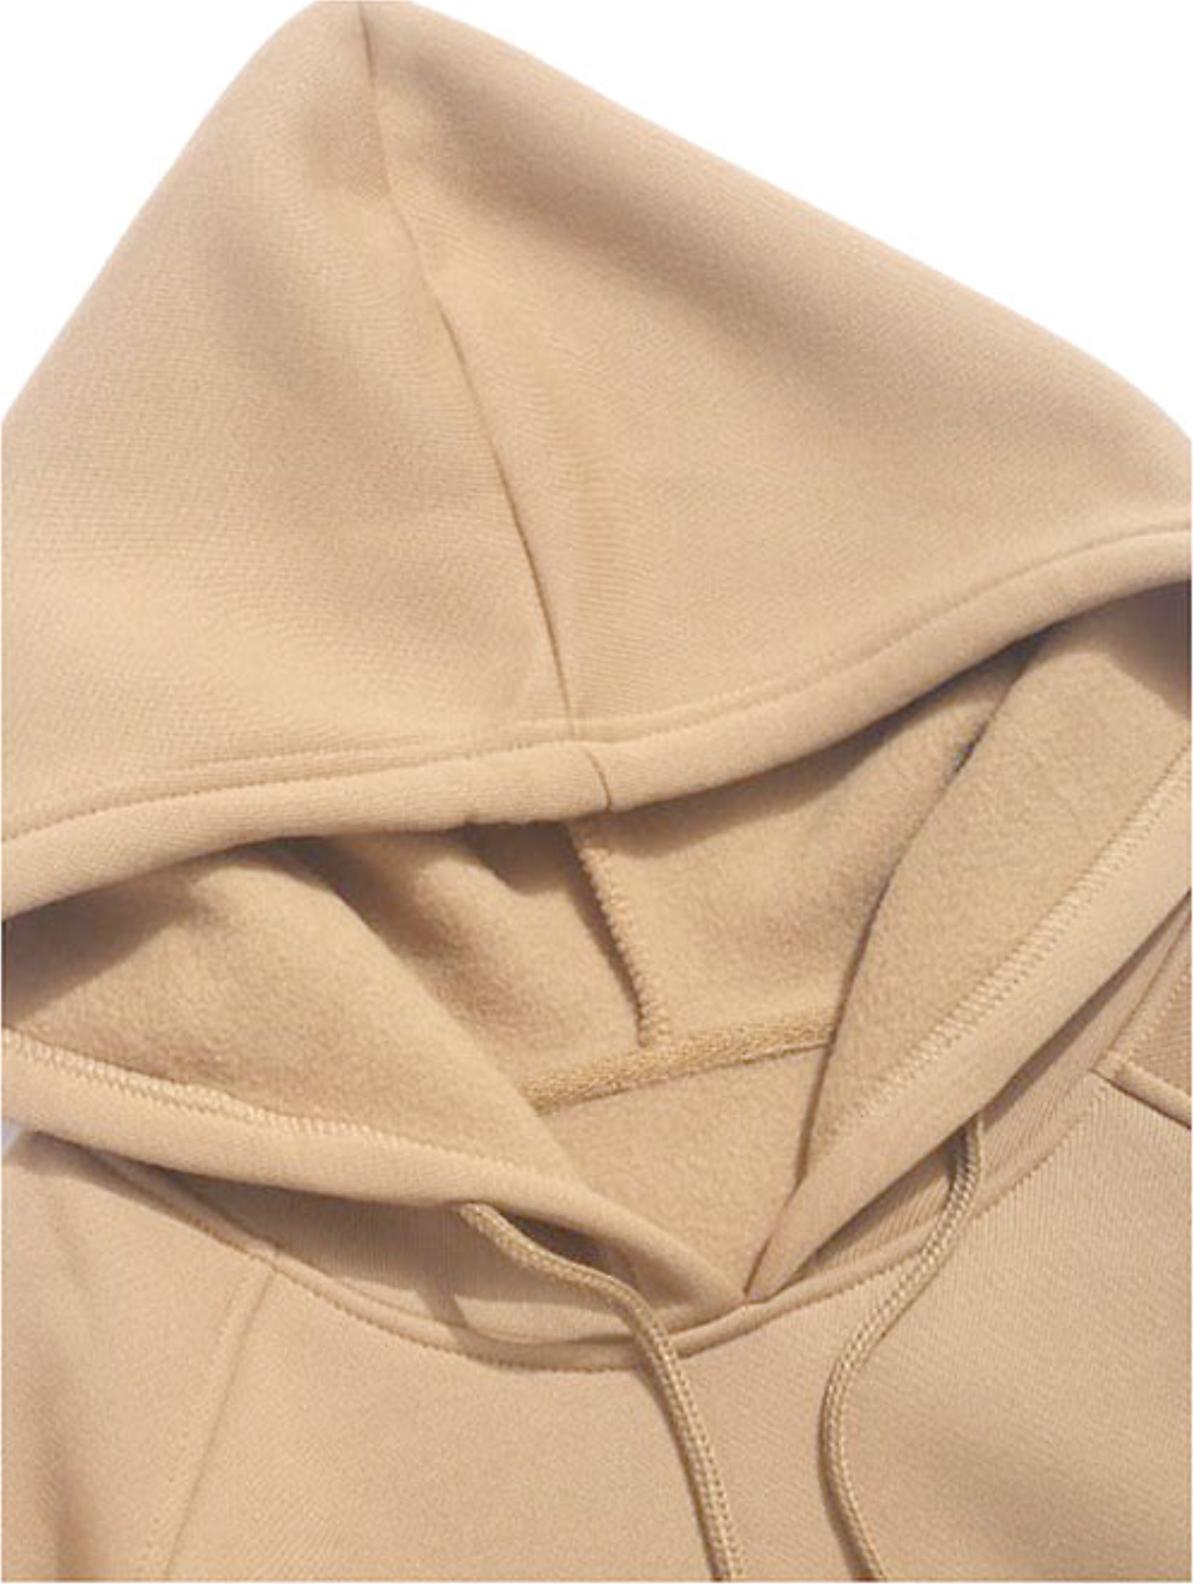 Áo hoodie nam nữ form rộng Unisex một màu cá tính Hàn Quốc – FORMEN SHOP – FM14GV016